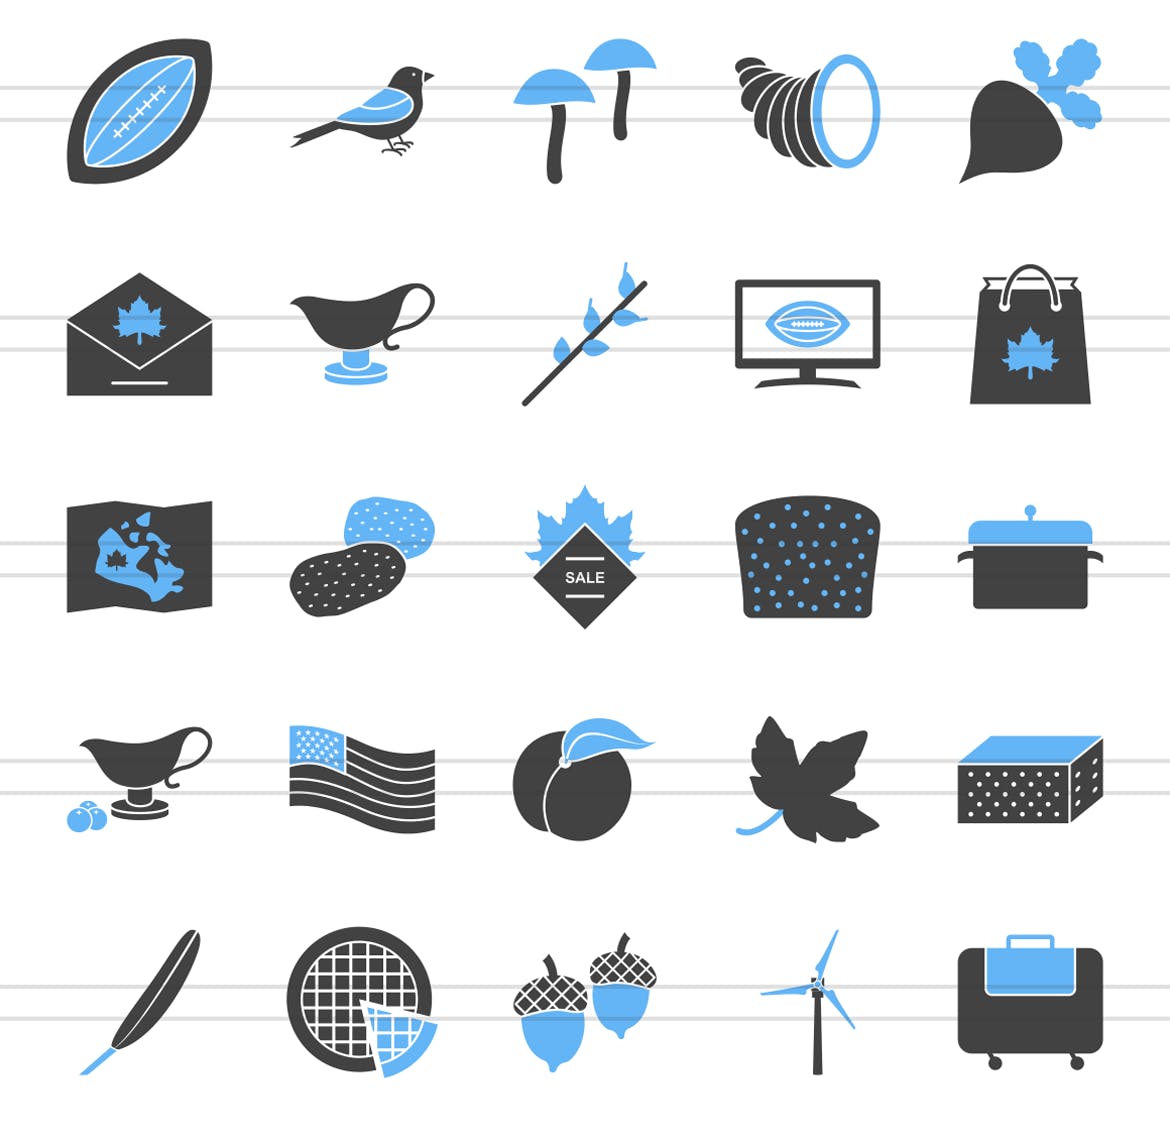 50枚感恩节主题蓝黑配色矢量填充图标 50 Thanksgiving Filled Blue & Black Icons插图(2)